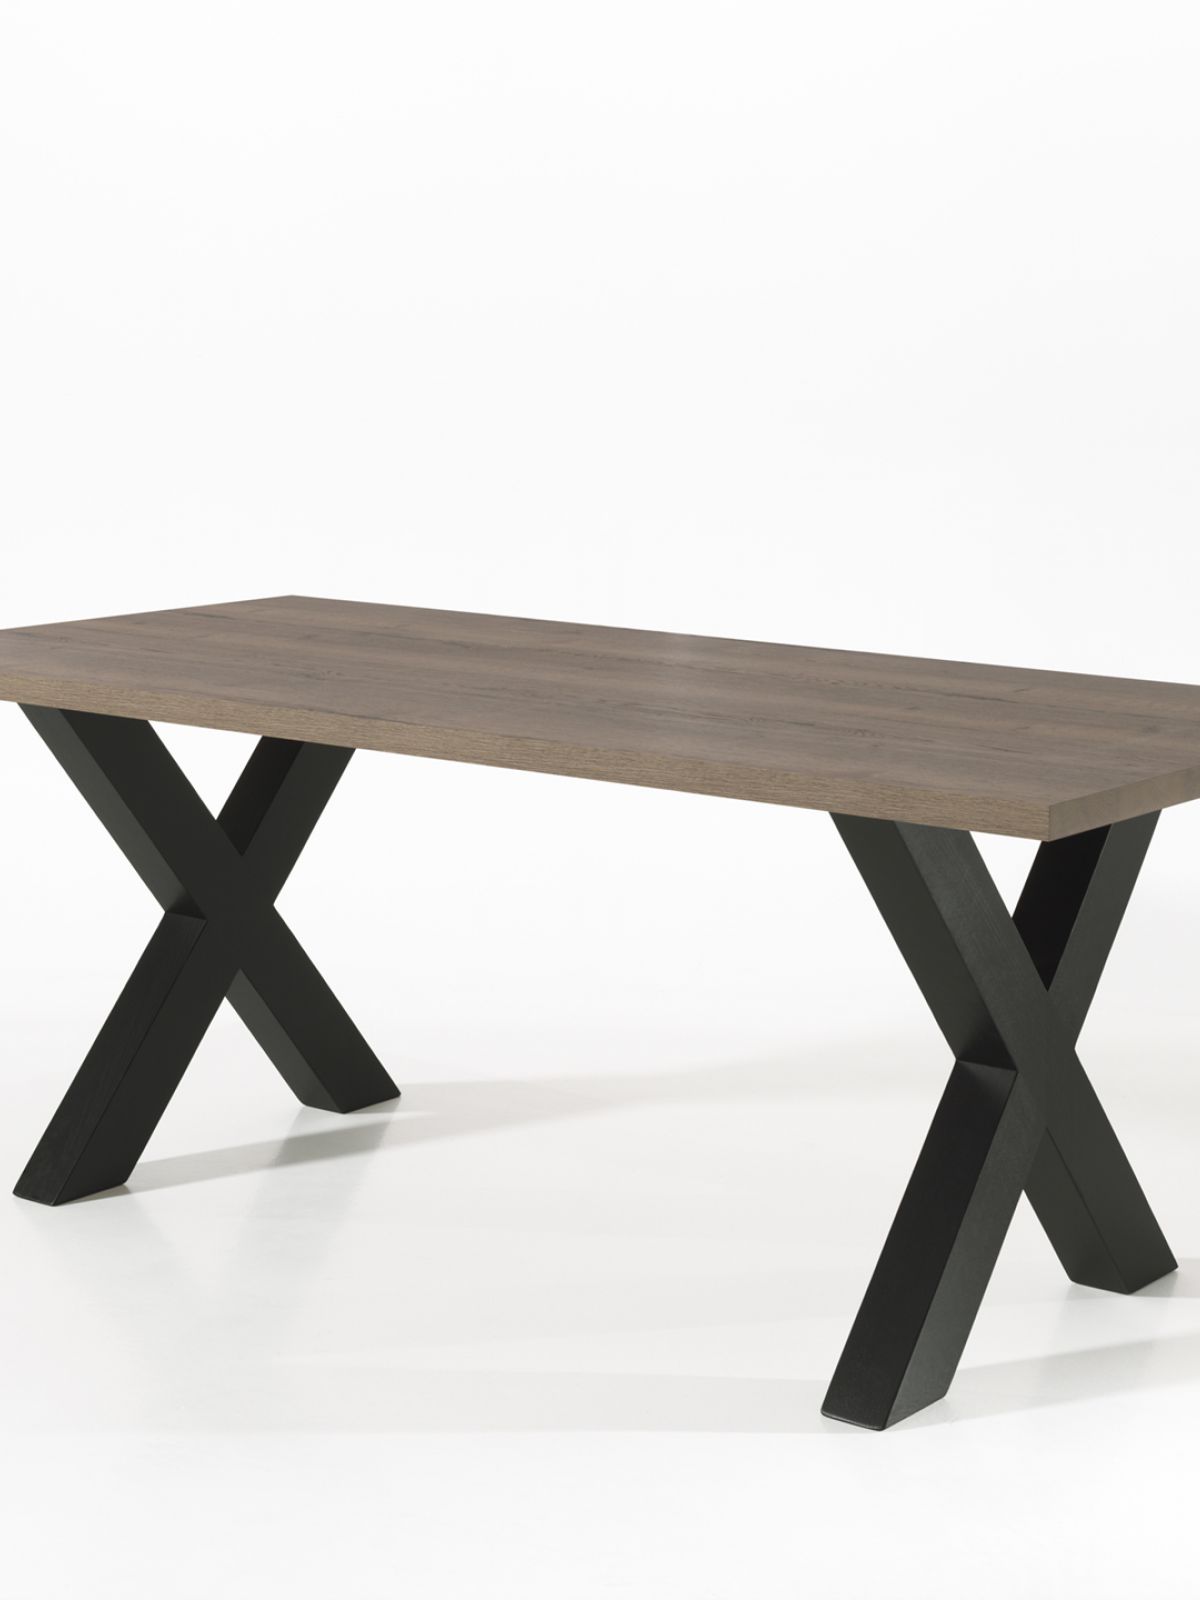 Table rectangulaire fixe avec X-pied 1,80m